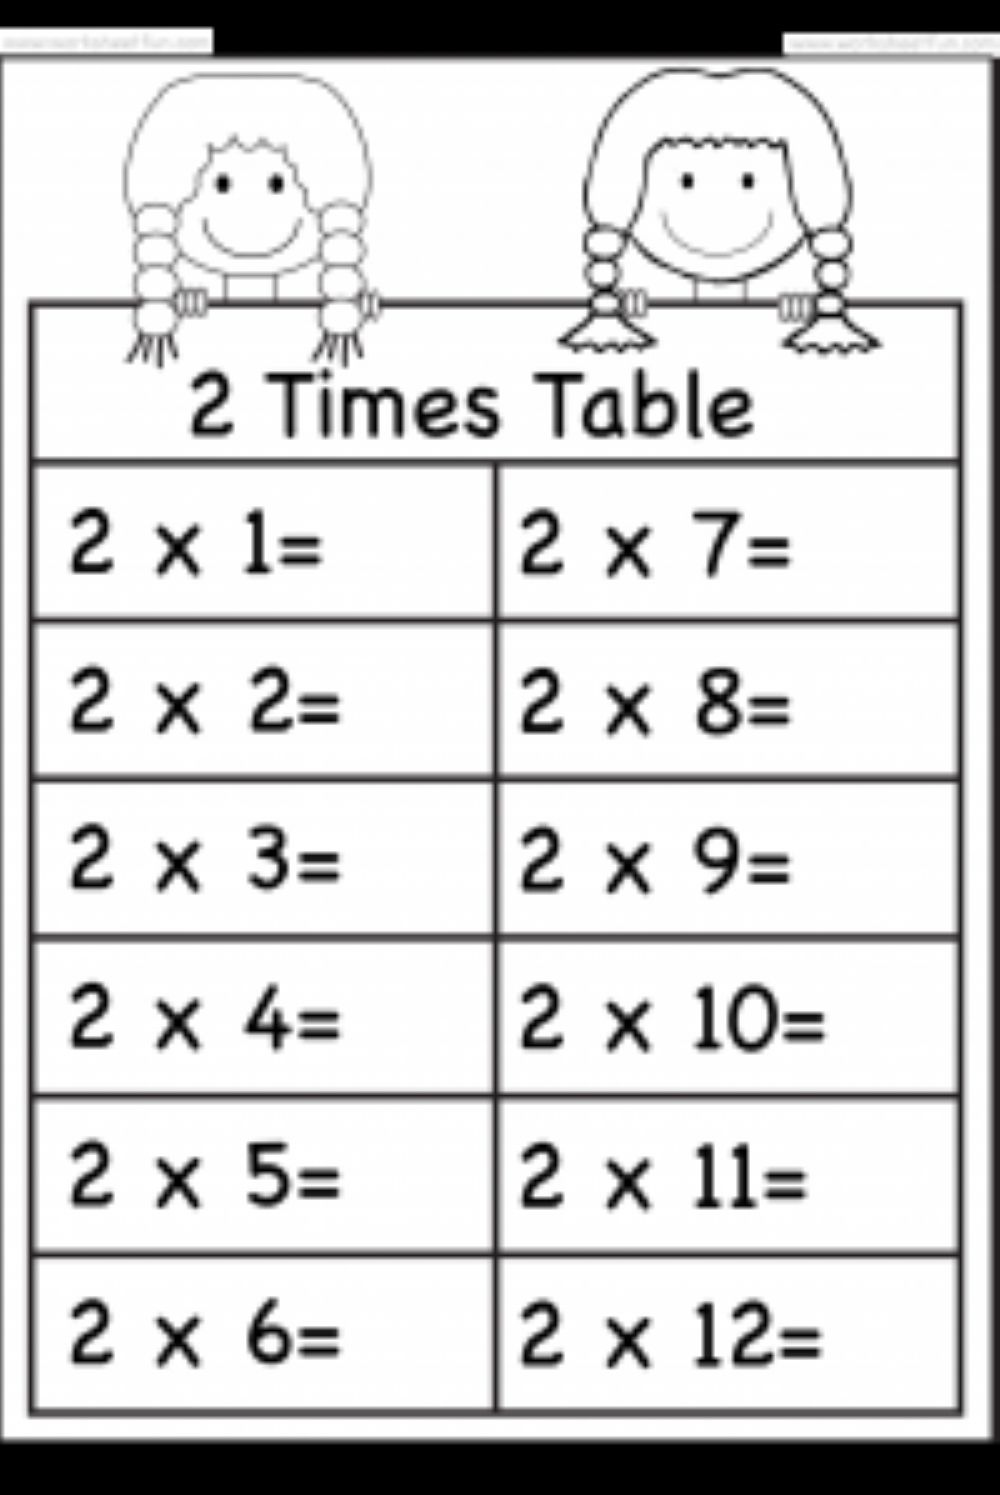 times-table-worksheets-printable-printable-worksheets